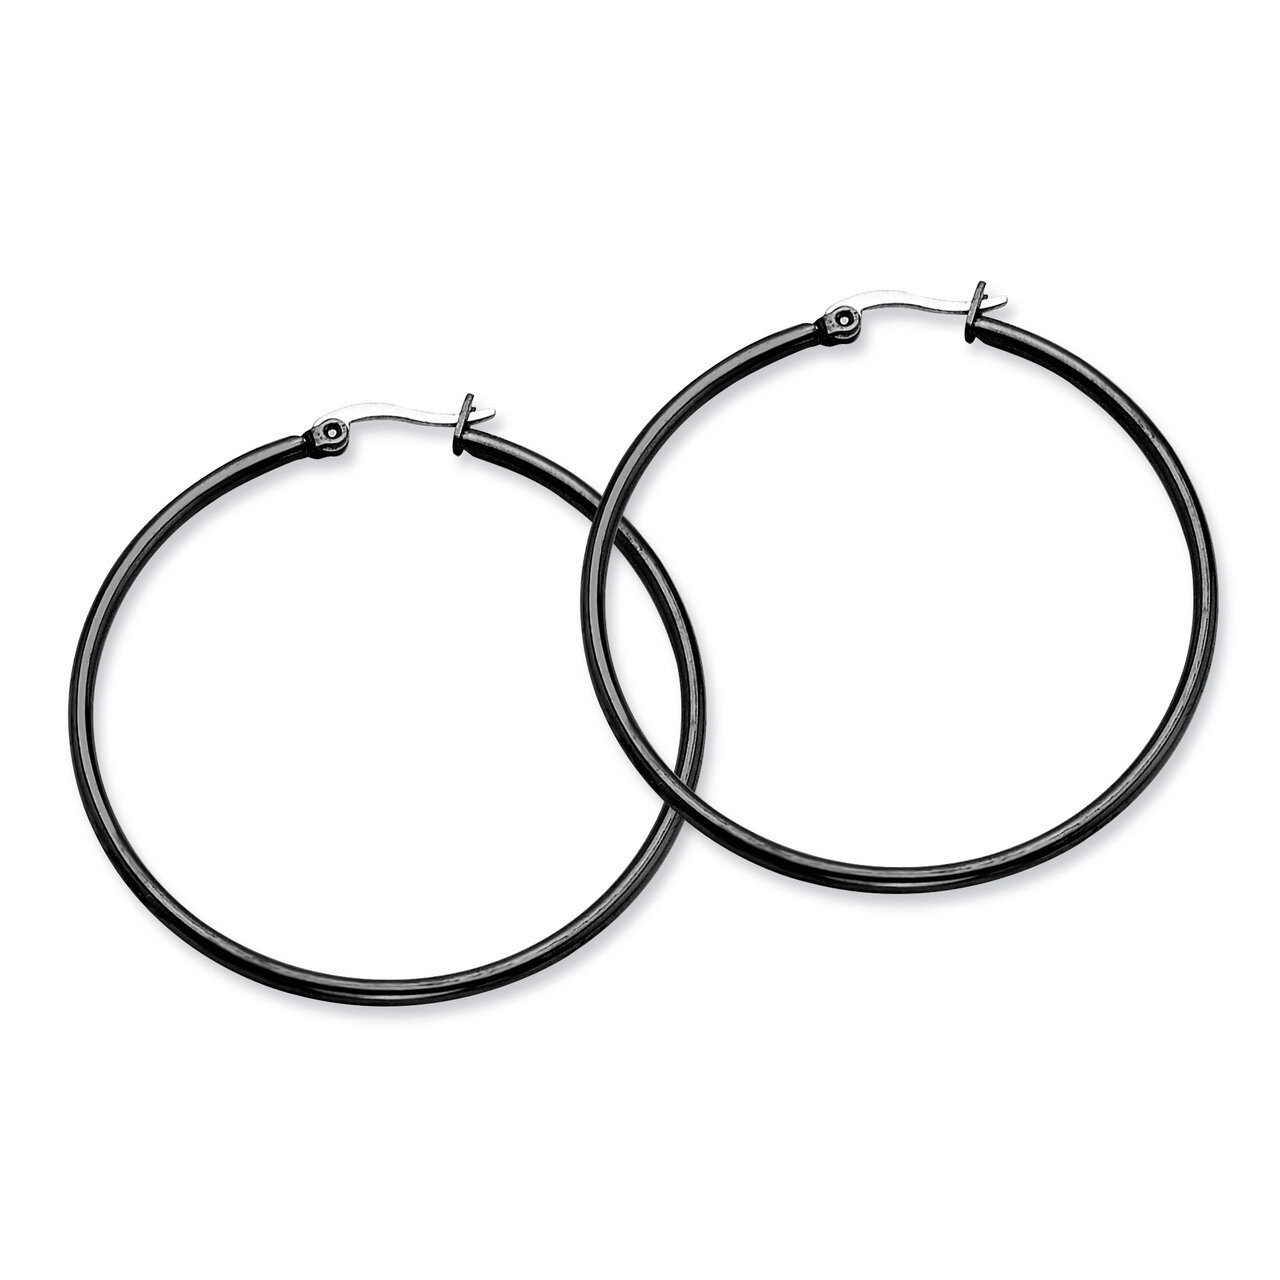 Black IP plated 48mm Hoop Earrings - Stainless Steel SRE569